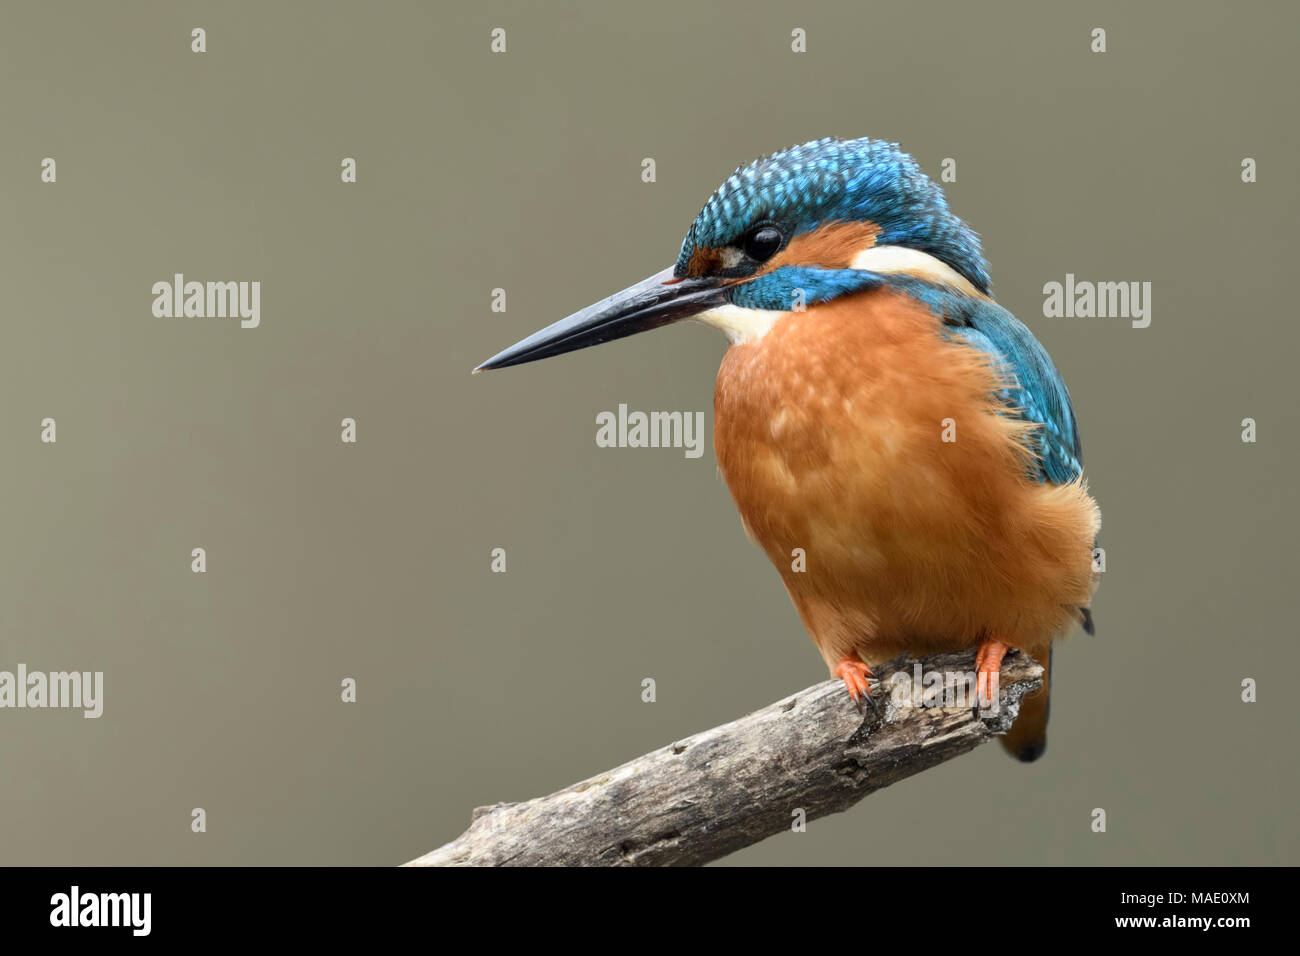 / Kingfisher Alcedo atthis Optimize ( ), homme oiseau, perché sur une branche pour la chasse, détaillée vue frontale, lumière douce, de la faune, de l'Europe. Banque D'Images